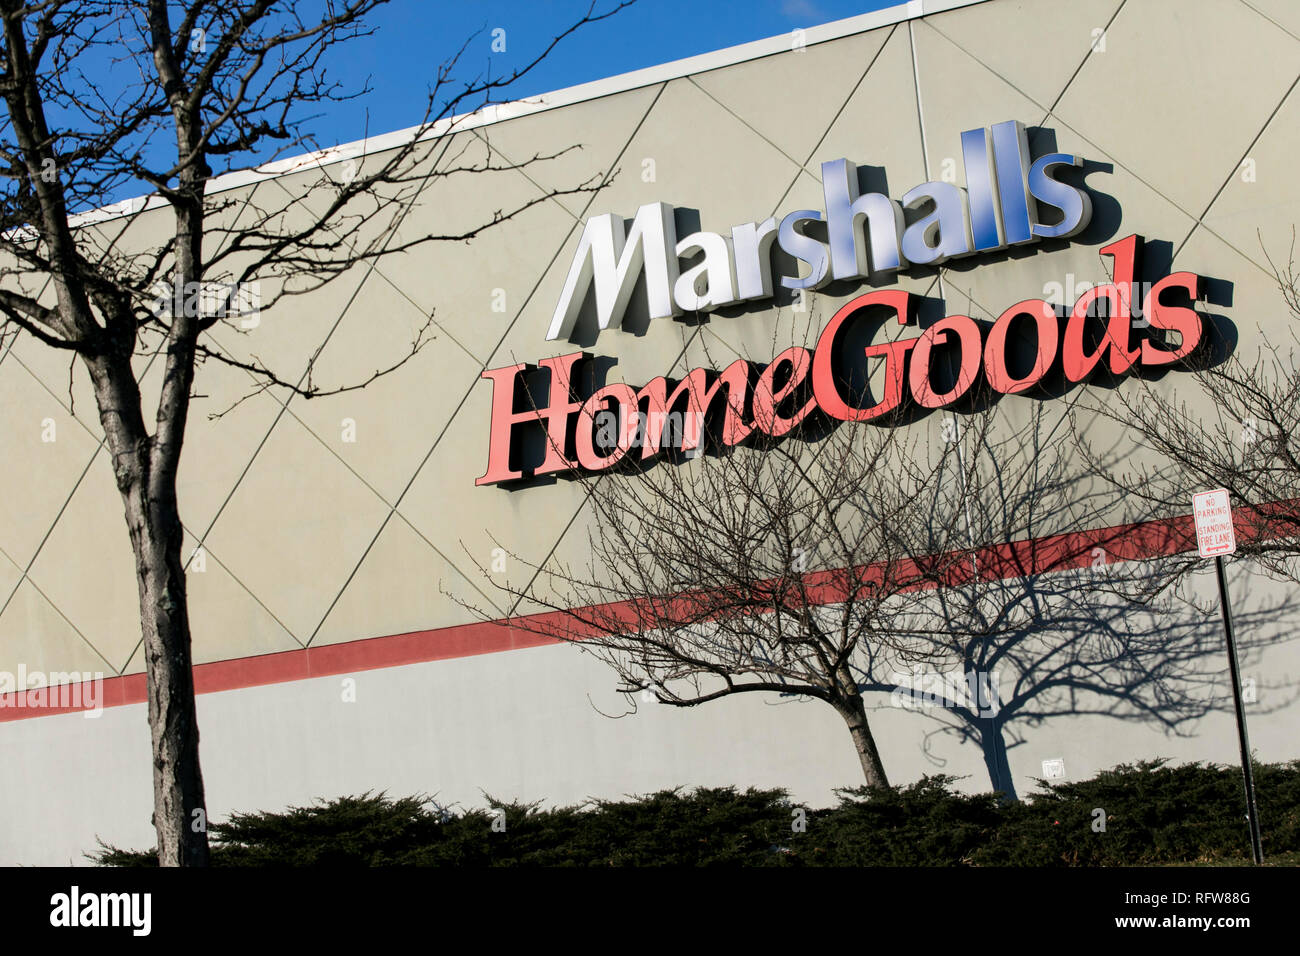 Marshalls Home Goods Near Me | Dakotadave.com Home Decor